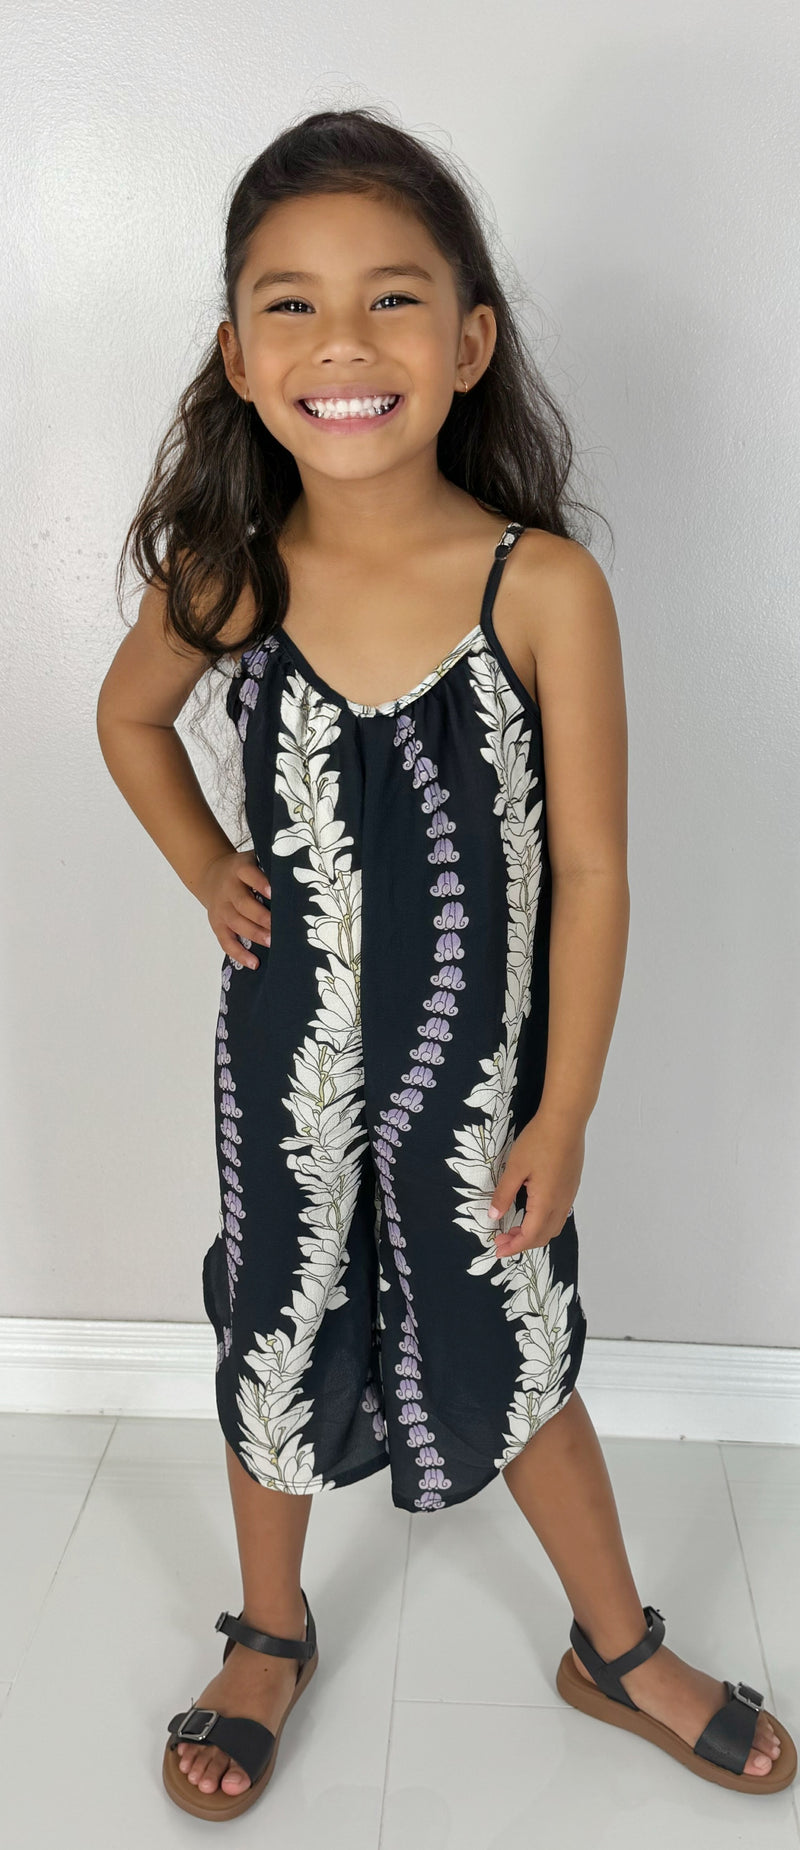 Jeans Warehouse Hawaii - DRESSES 2T-4T - PUAKENIKENI JUMPSUIT | KIDS SIZE 2T-4T | By LUZ